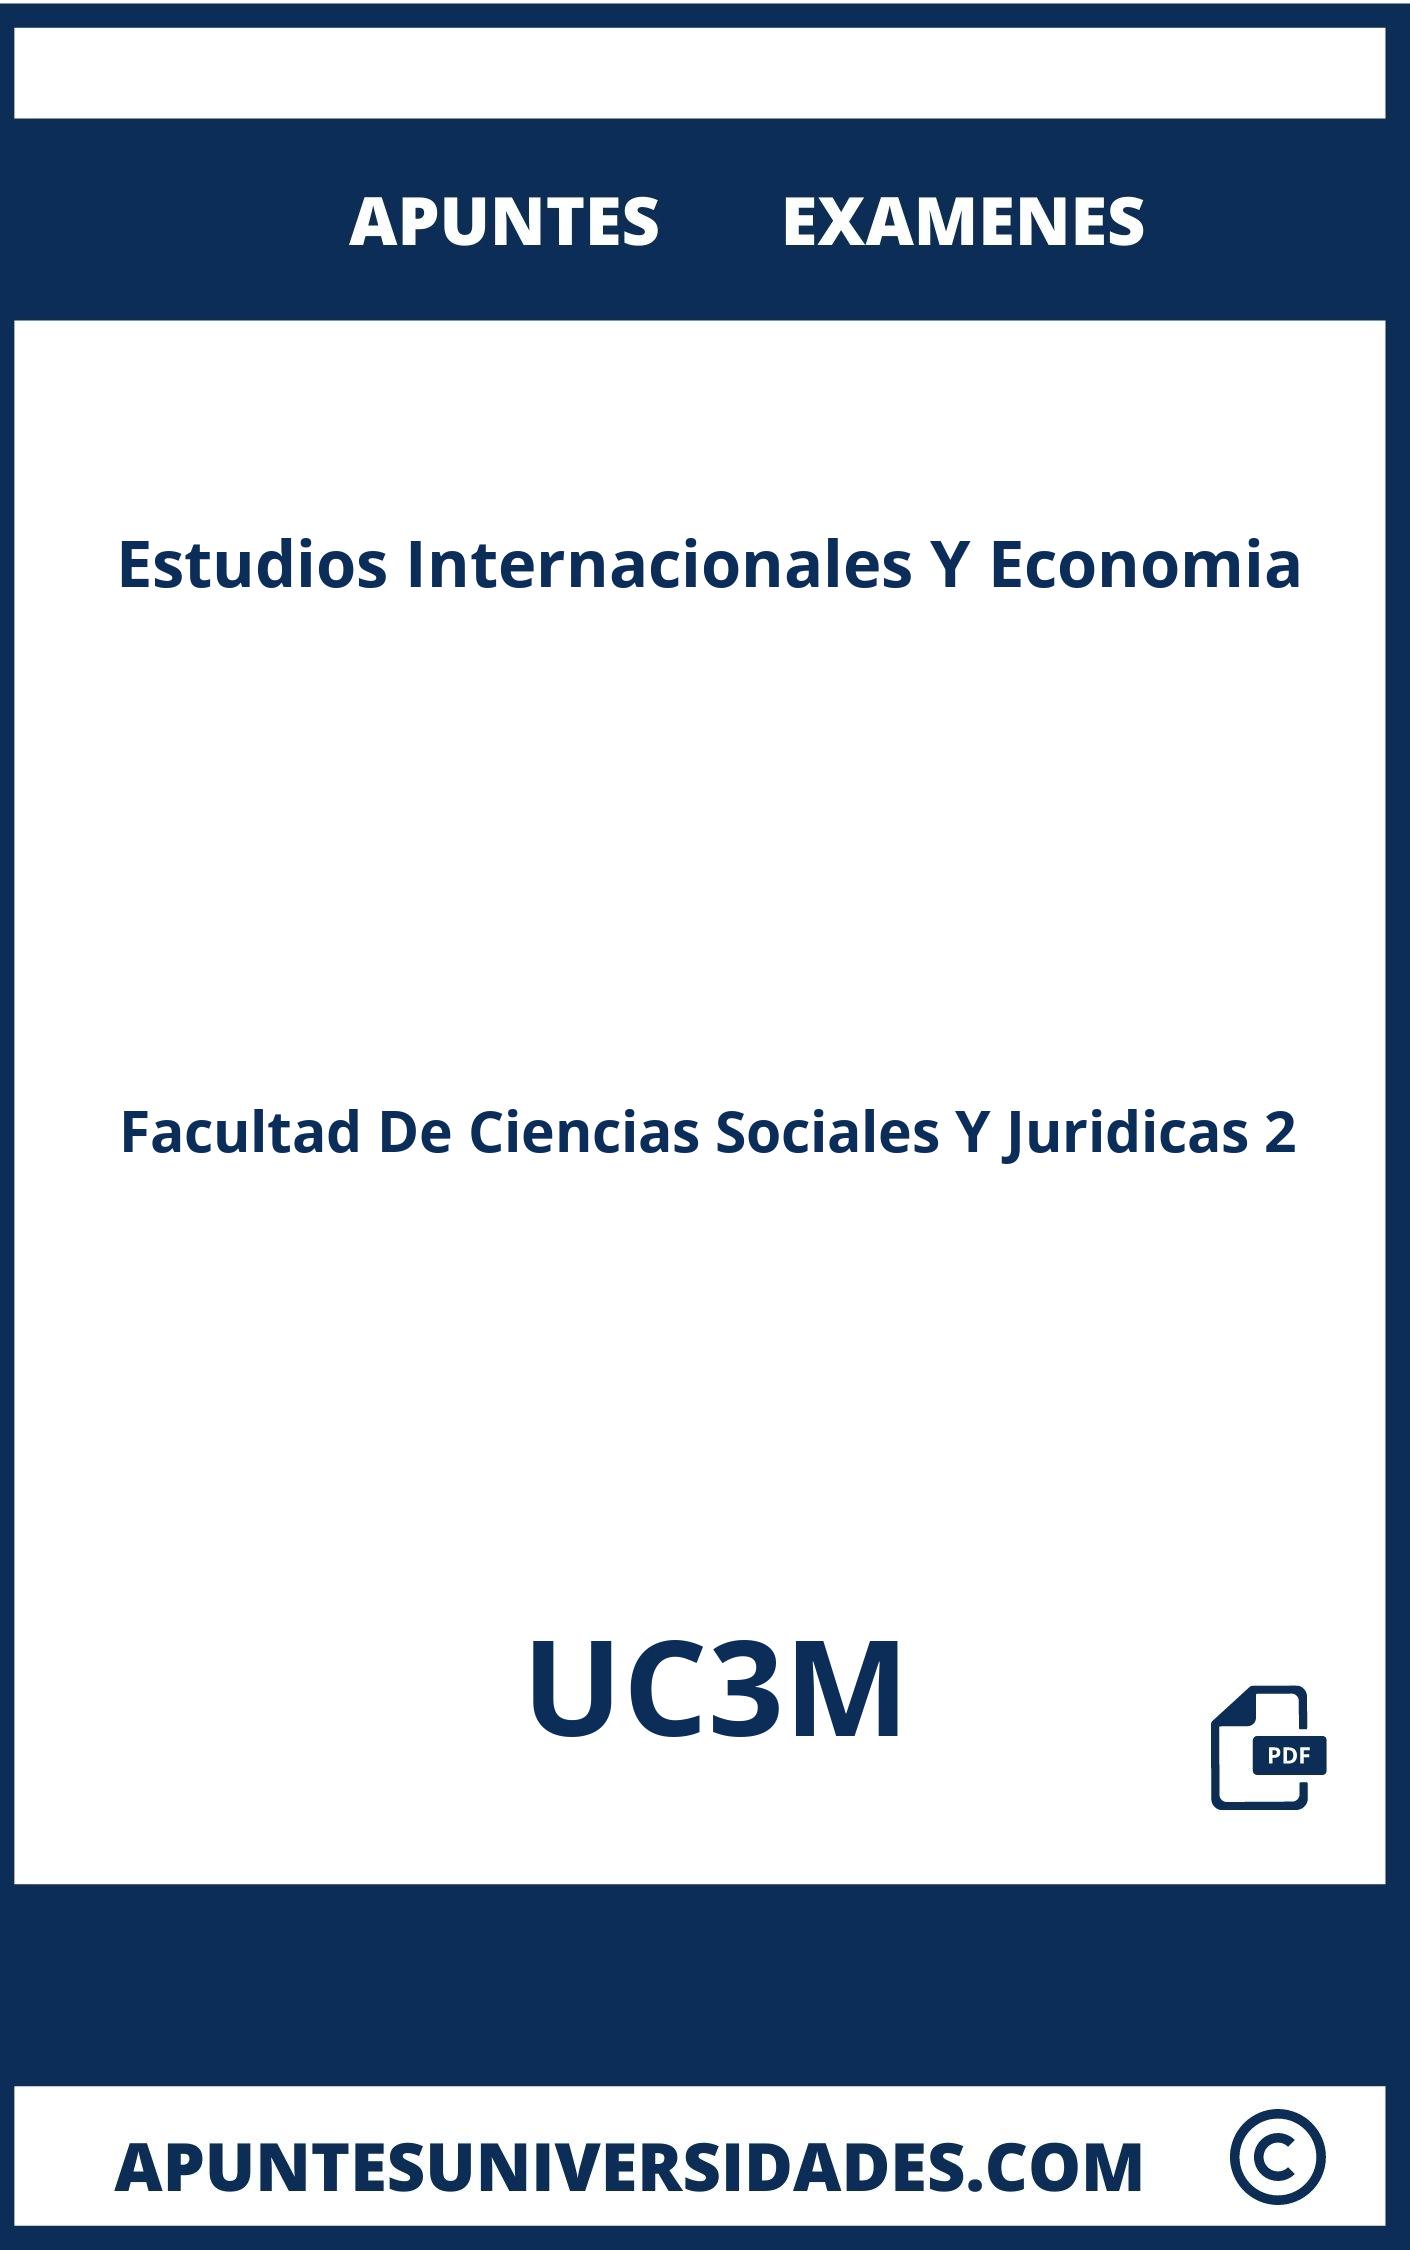 Apuntes Examenes Estudios Internacionales Y Economia UC3M